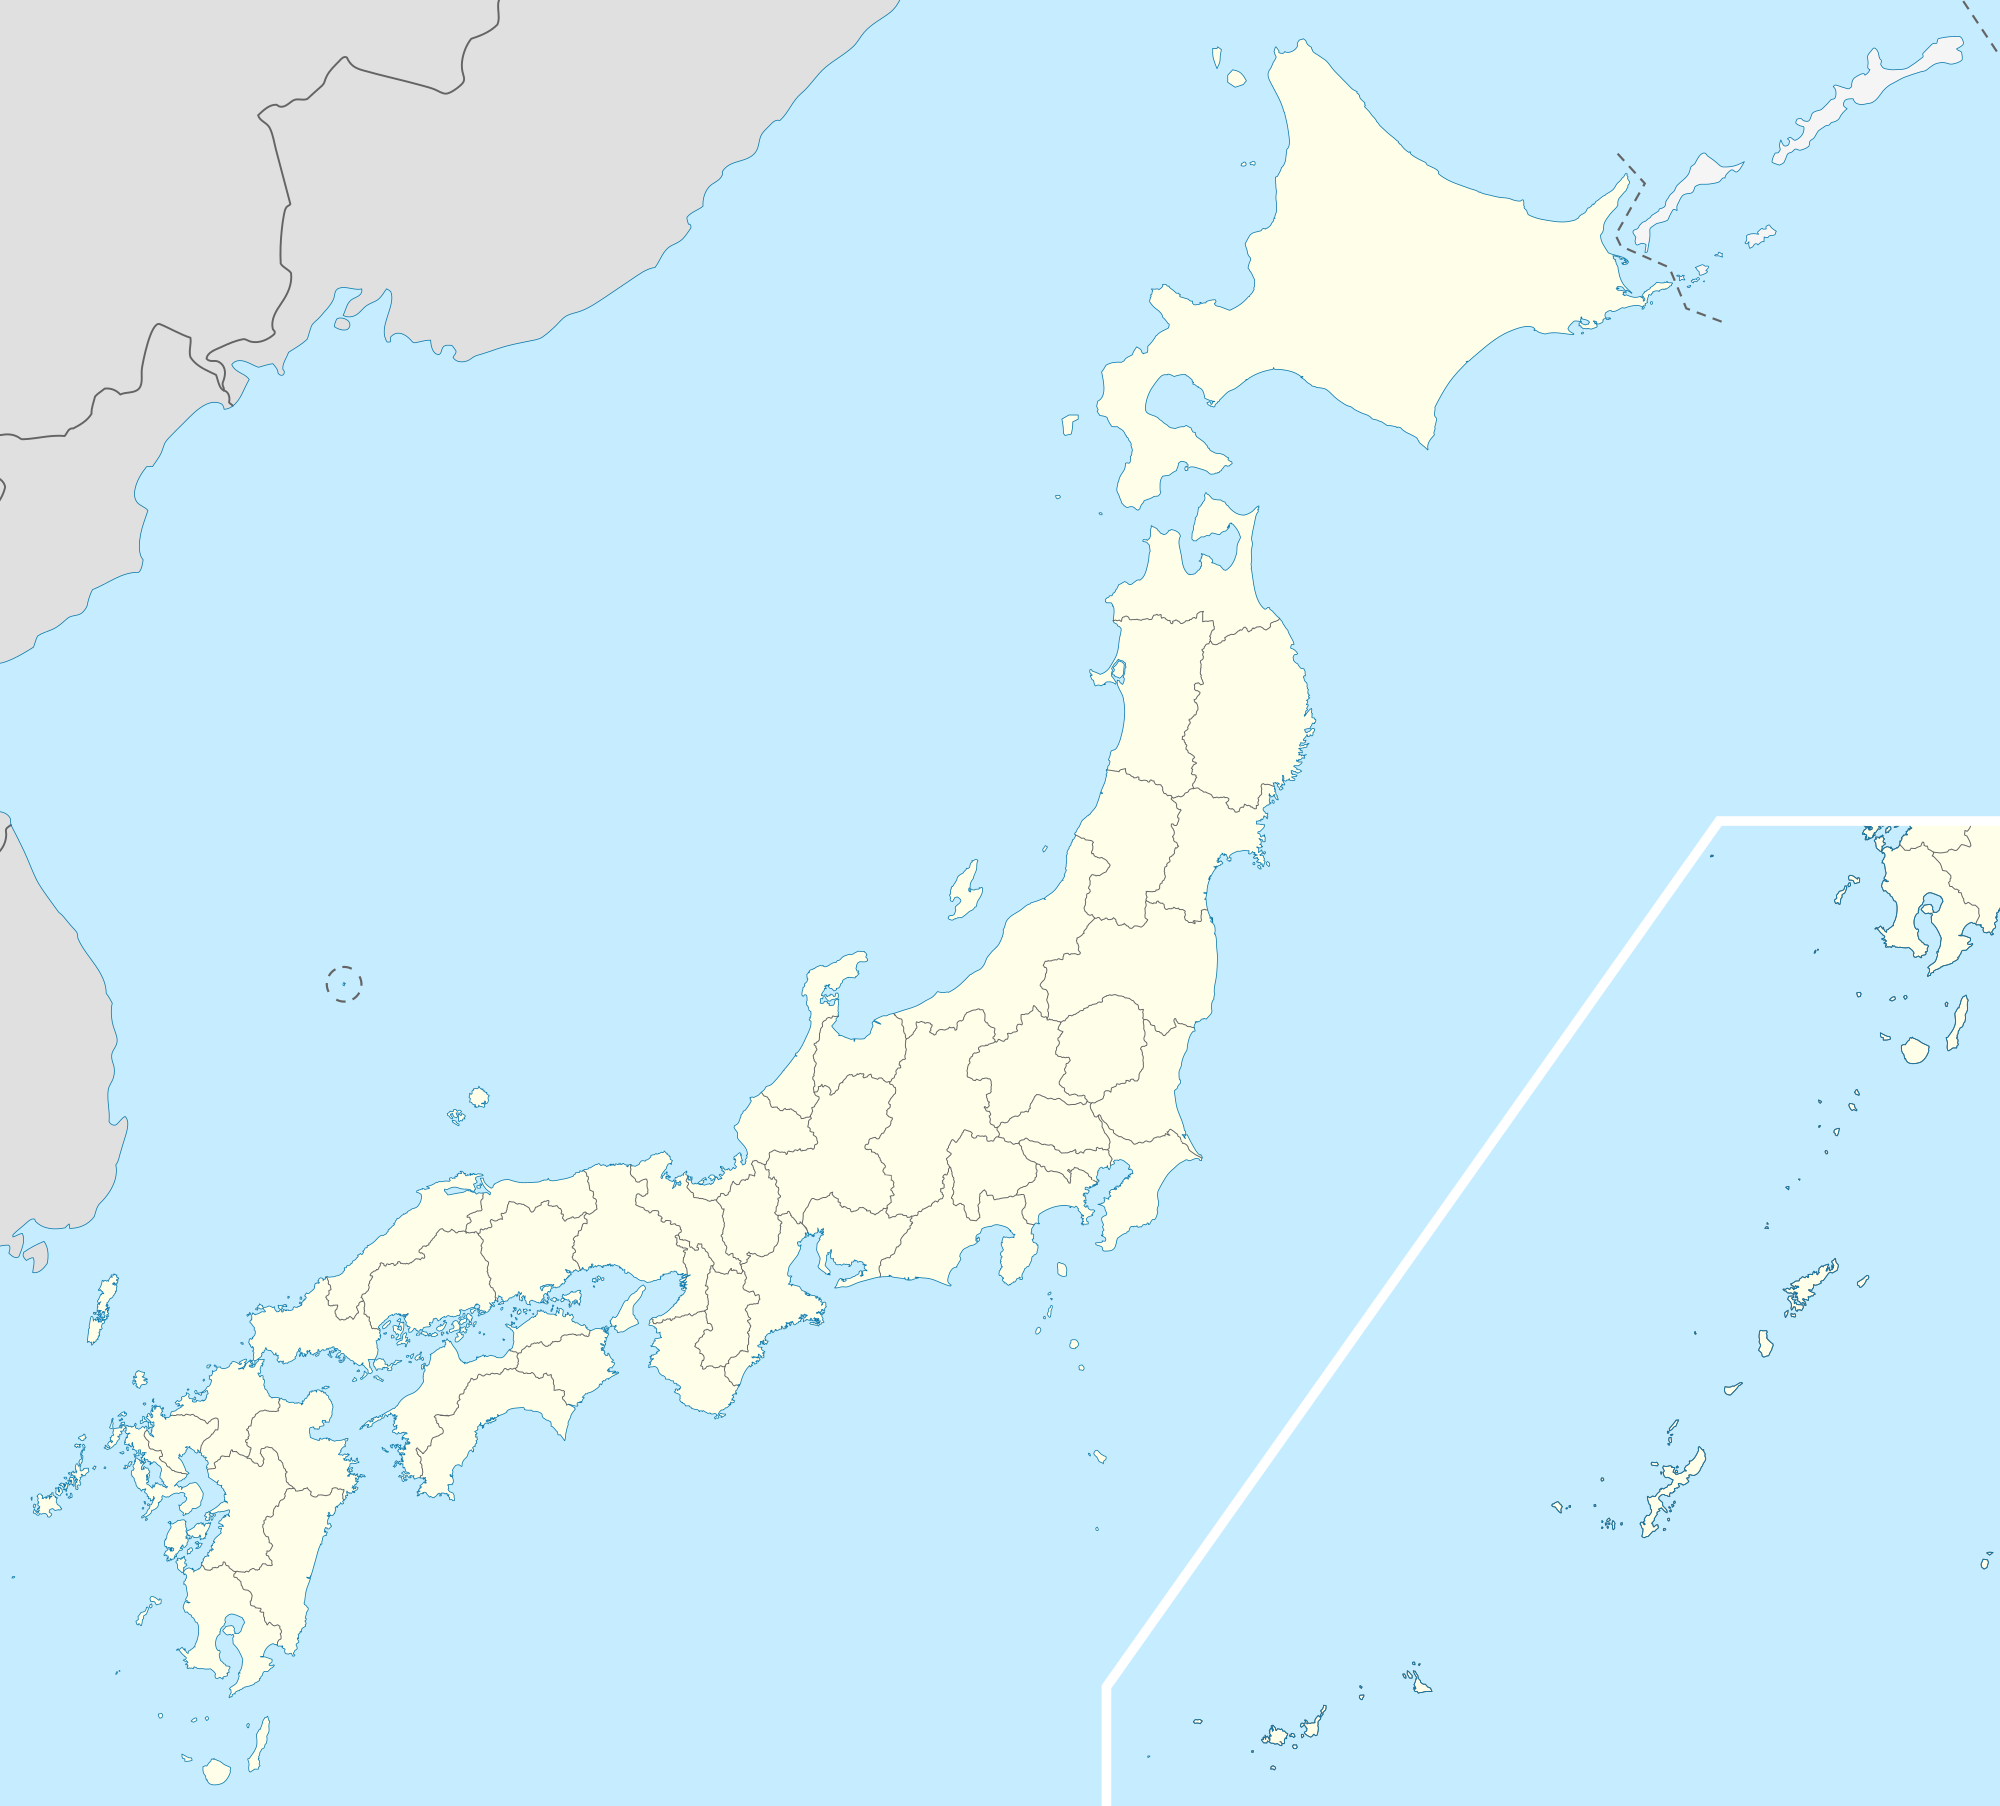 広島 is located in Japan